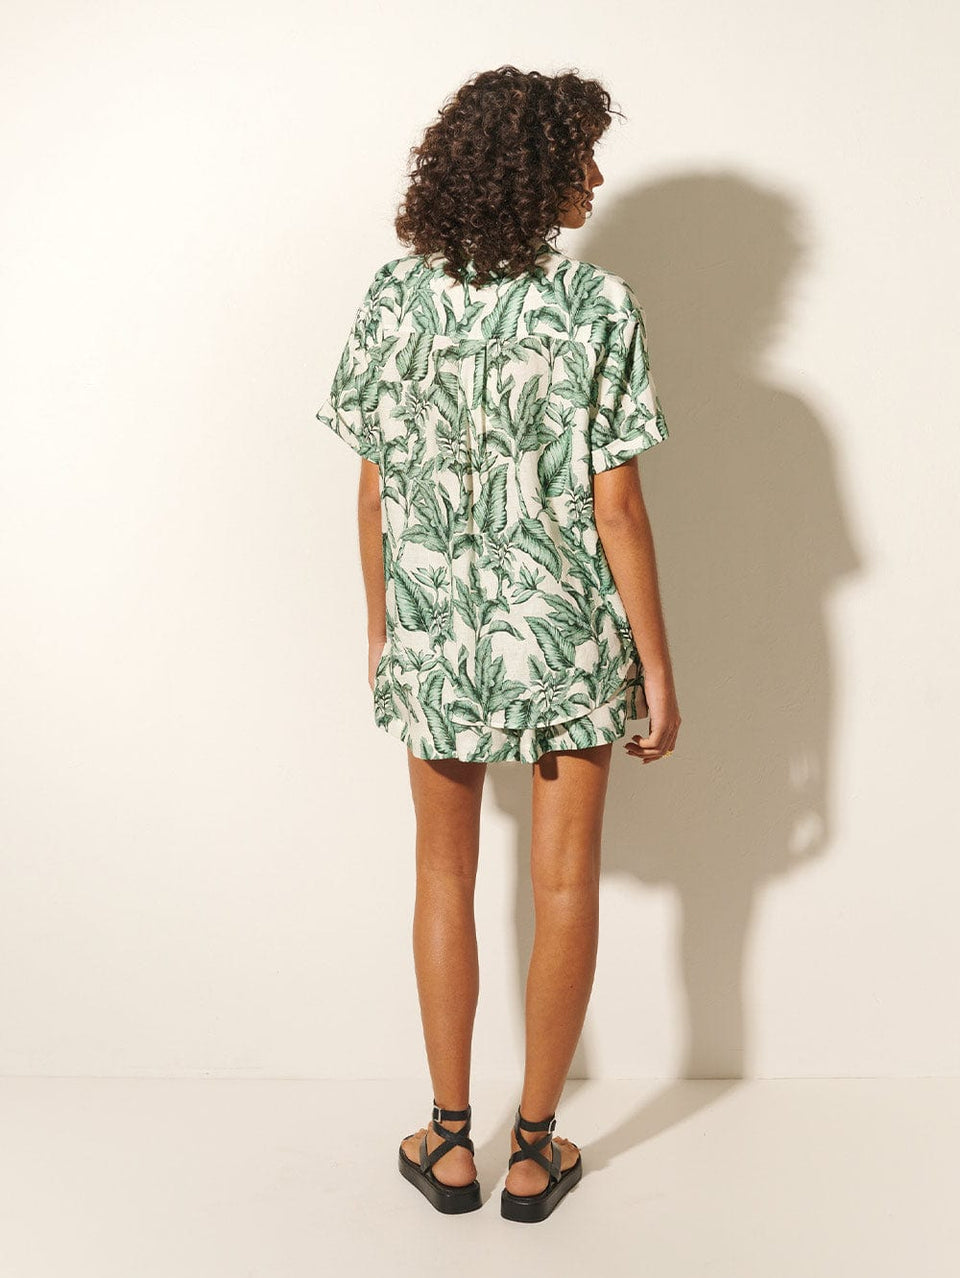 Tropico Short KIVARI | Model wears palm leaf print shorts back view